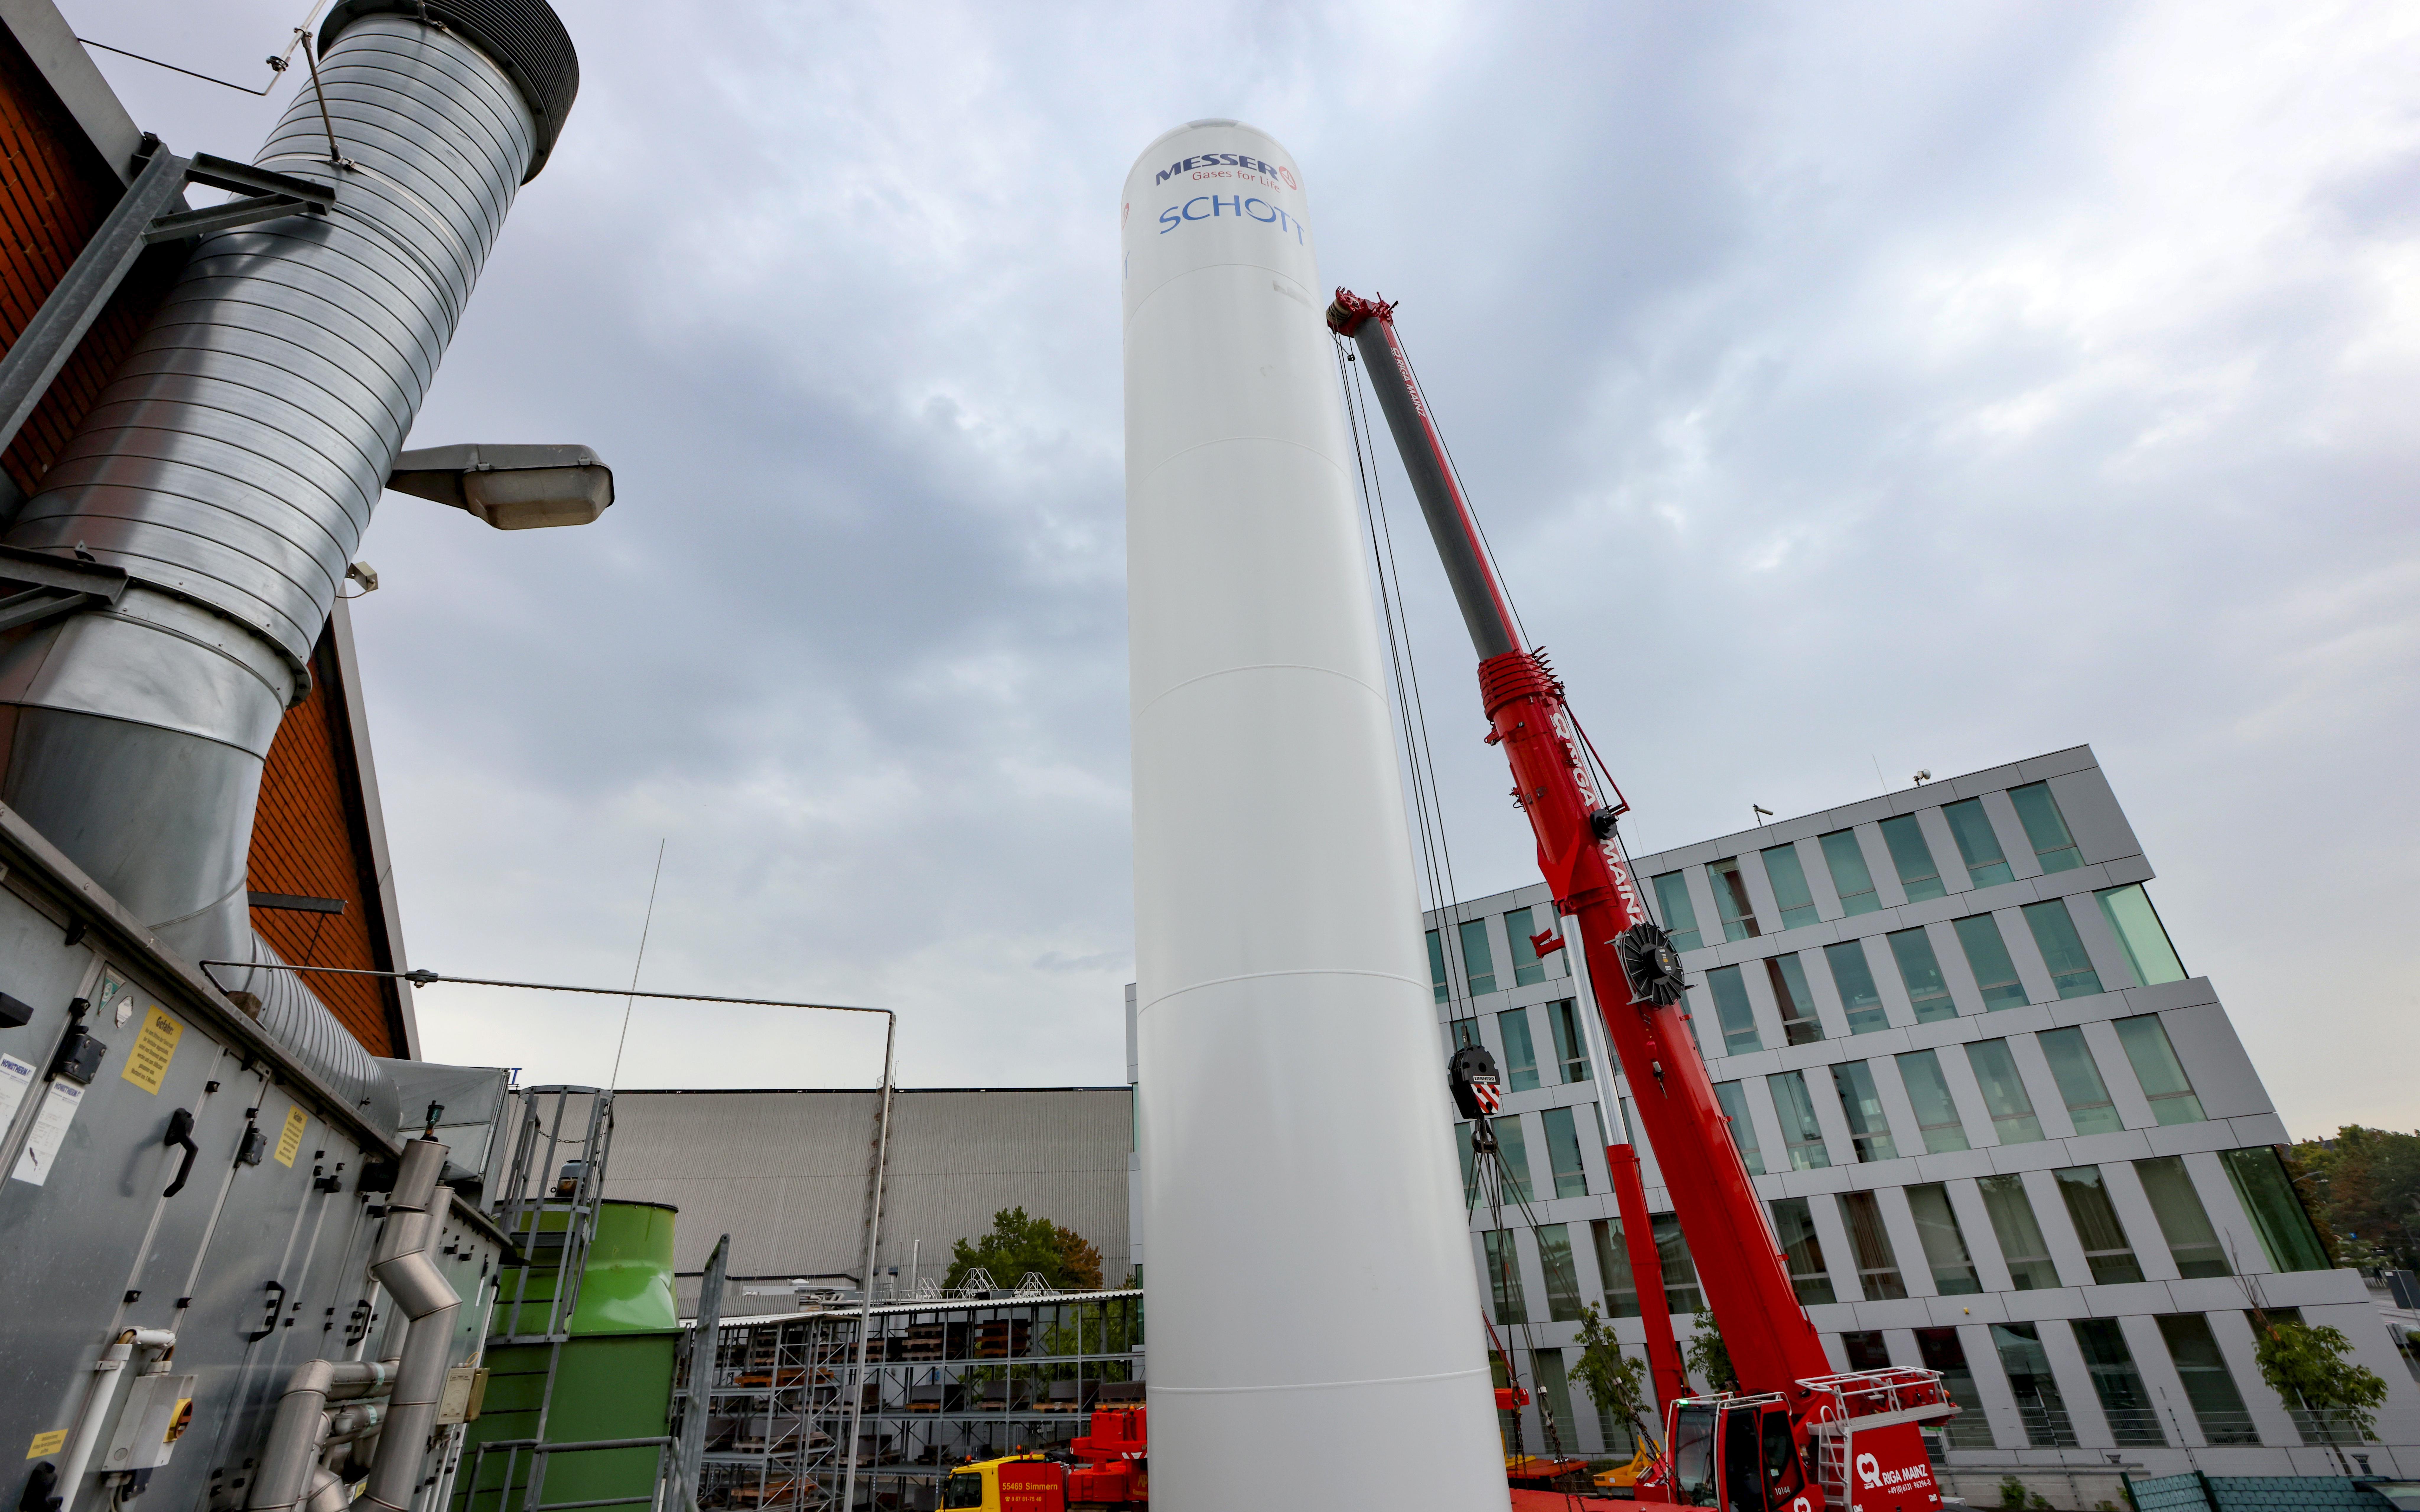 Wasserstofftank in der SCHOTT Produktionsstätte in Mainz, Deutschland